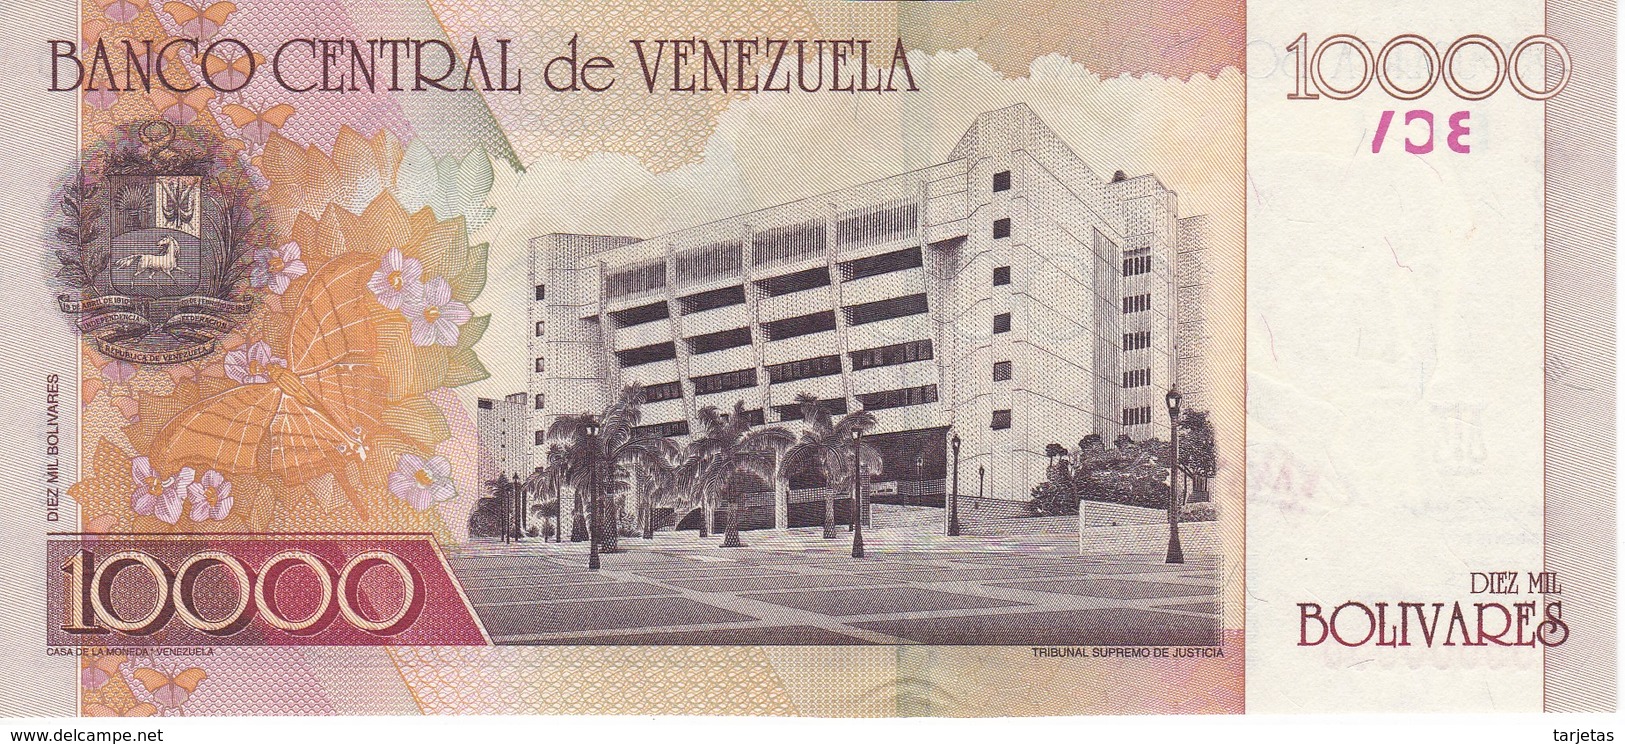 ESPECIMEN -BILLETE DE VENEZUELA DE 10000 BOLIVARES DEL AÑO 2001 SIN CIRCULAR-UNCIRCULATED (SPECIMEN) (BANKNOTE) MUY RARO - Venezuela